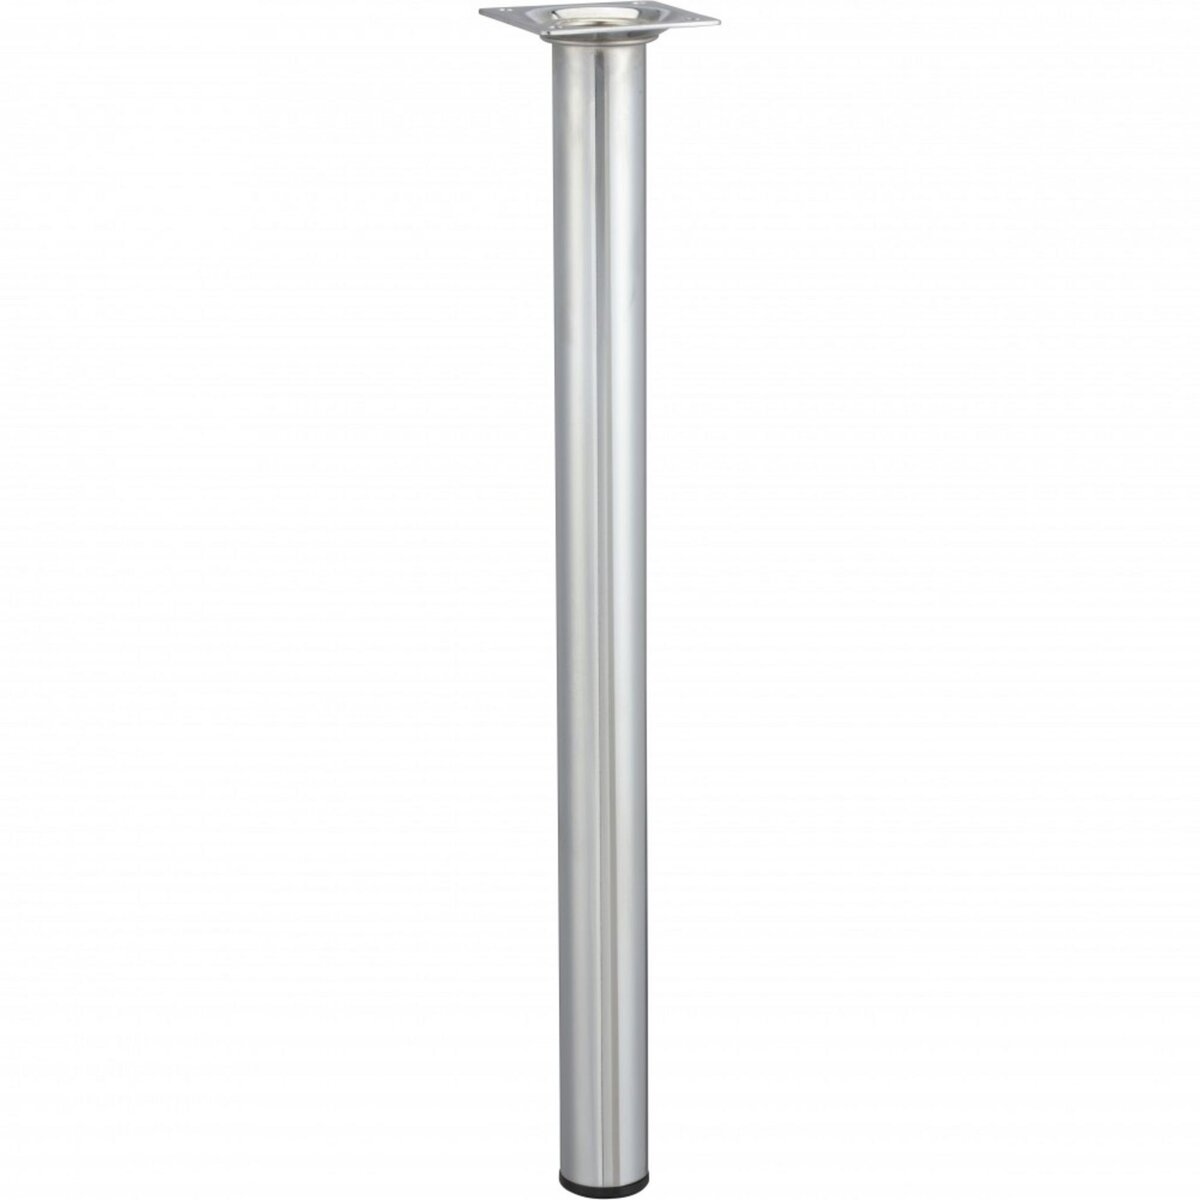 CENTRALE BRICO Pied de table basse cylindrique fixe acier chromé gris, 40 cm